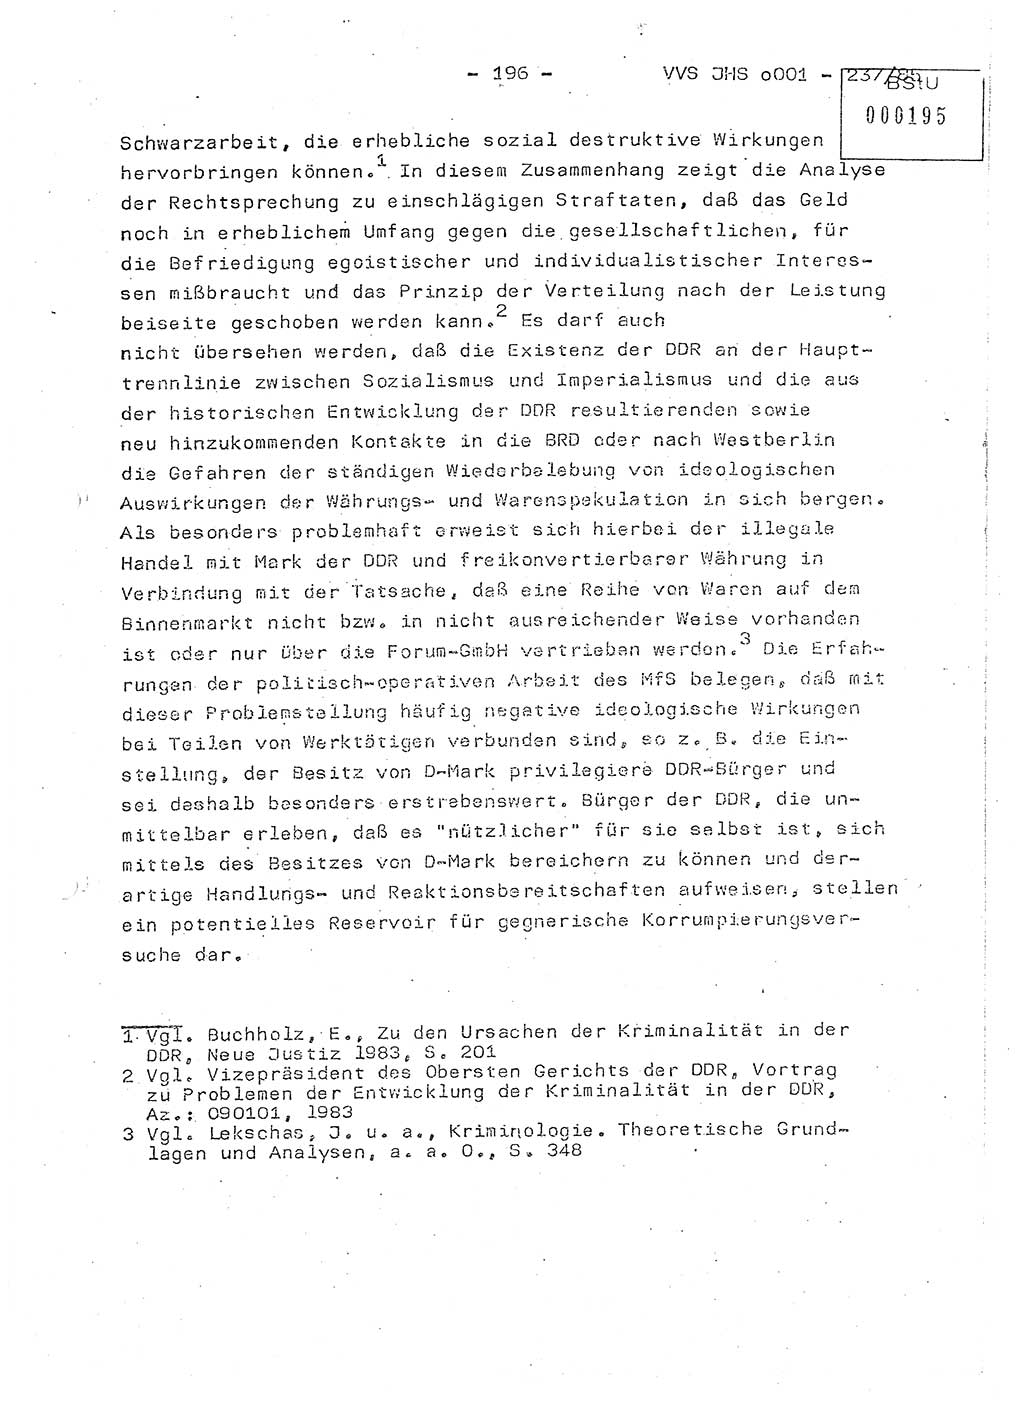 Dissertation Oberstleutnant Peter Jakulski (JHS), Oberstleutnat Christian Rudolph (HA Ⅸ), Major Horst Böttger (ZMD), Major Wolfgang Grüneberg (JHS), Major Albert Meutsch (JHS), Ministerium für Staatssicherheit (MfS) [Deutsche Demokratische Republik (DDR)], Juristische Hochschule (JHS), Vertrauliche Verschlußsache (VVS) o001-237/85, Potsdam 1985, Seite 196 (Diss. MfS DDR JHS VVS o001-237/85 1985, S. 196)